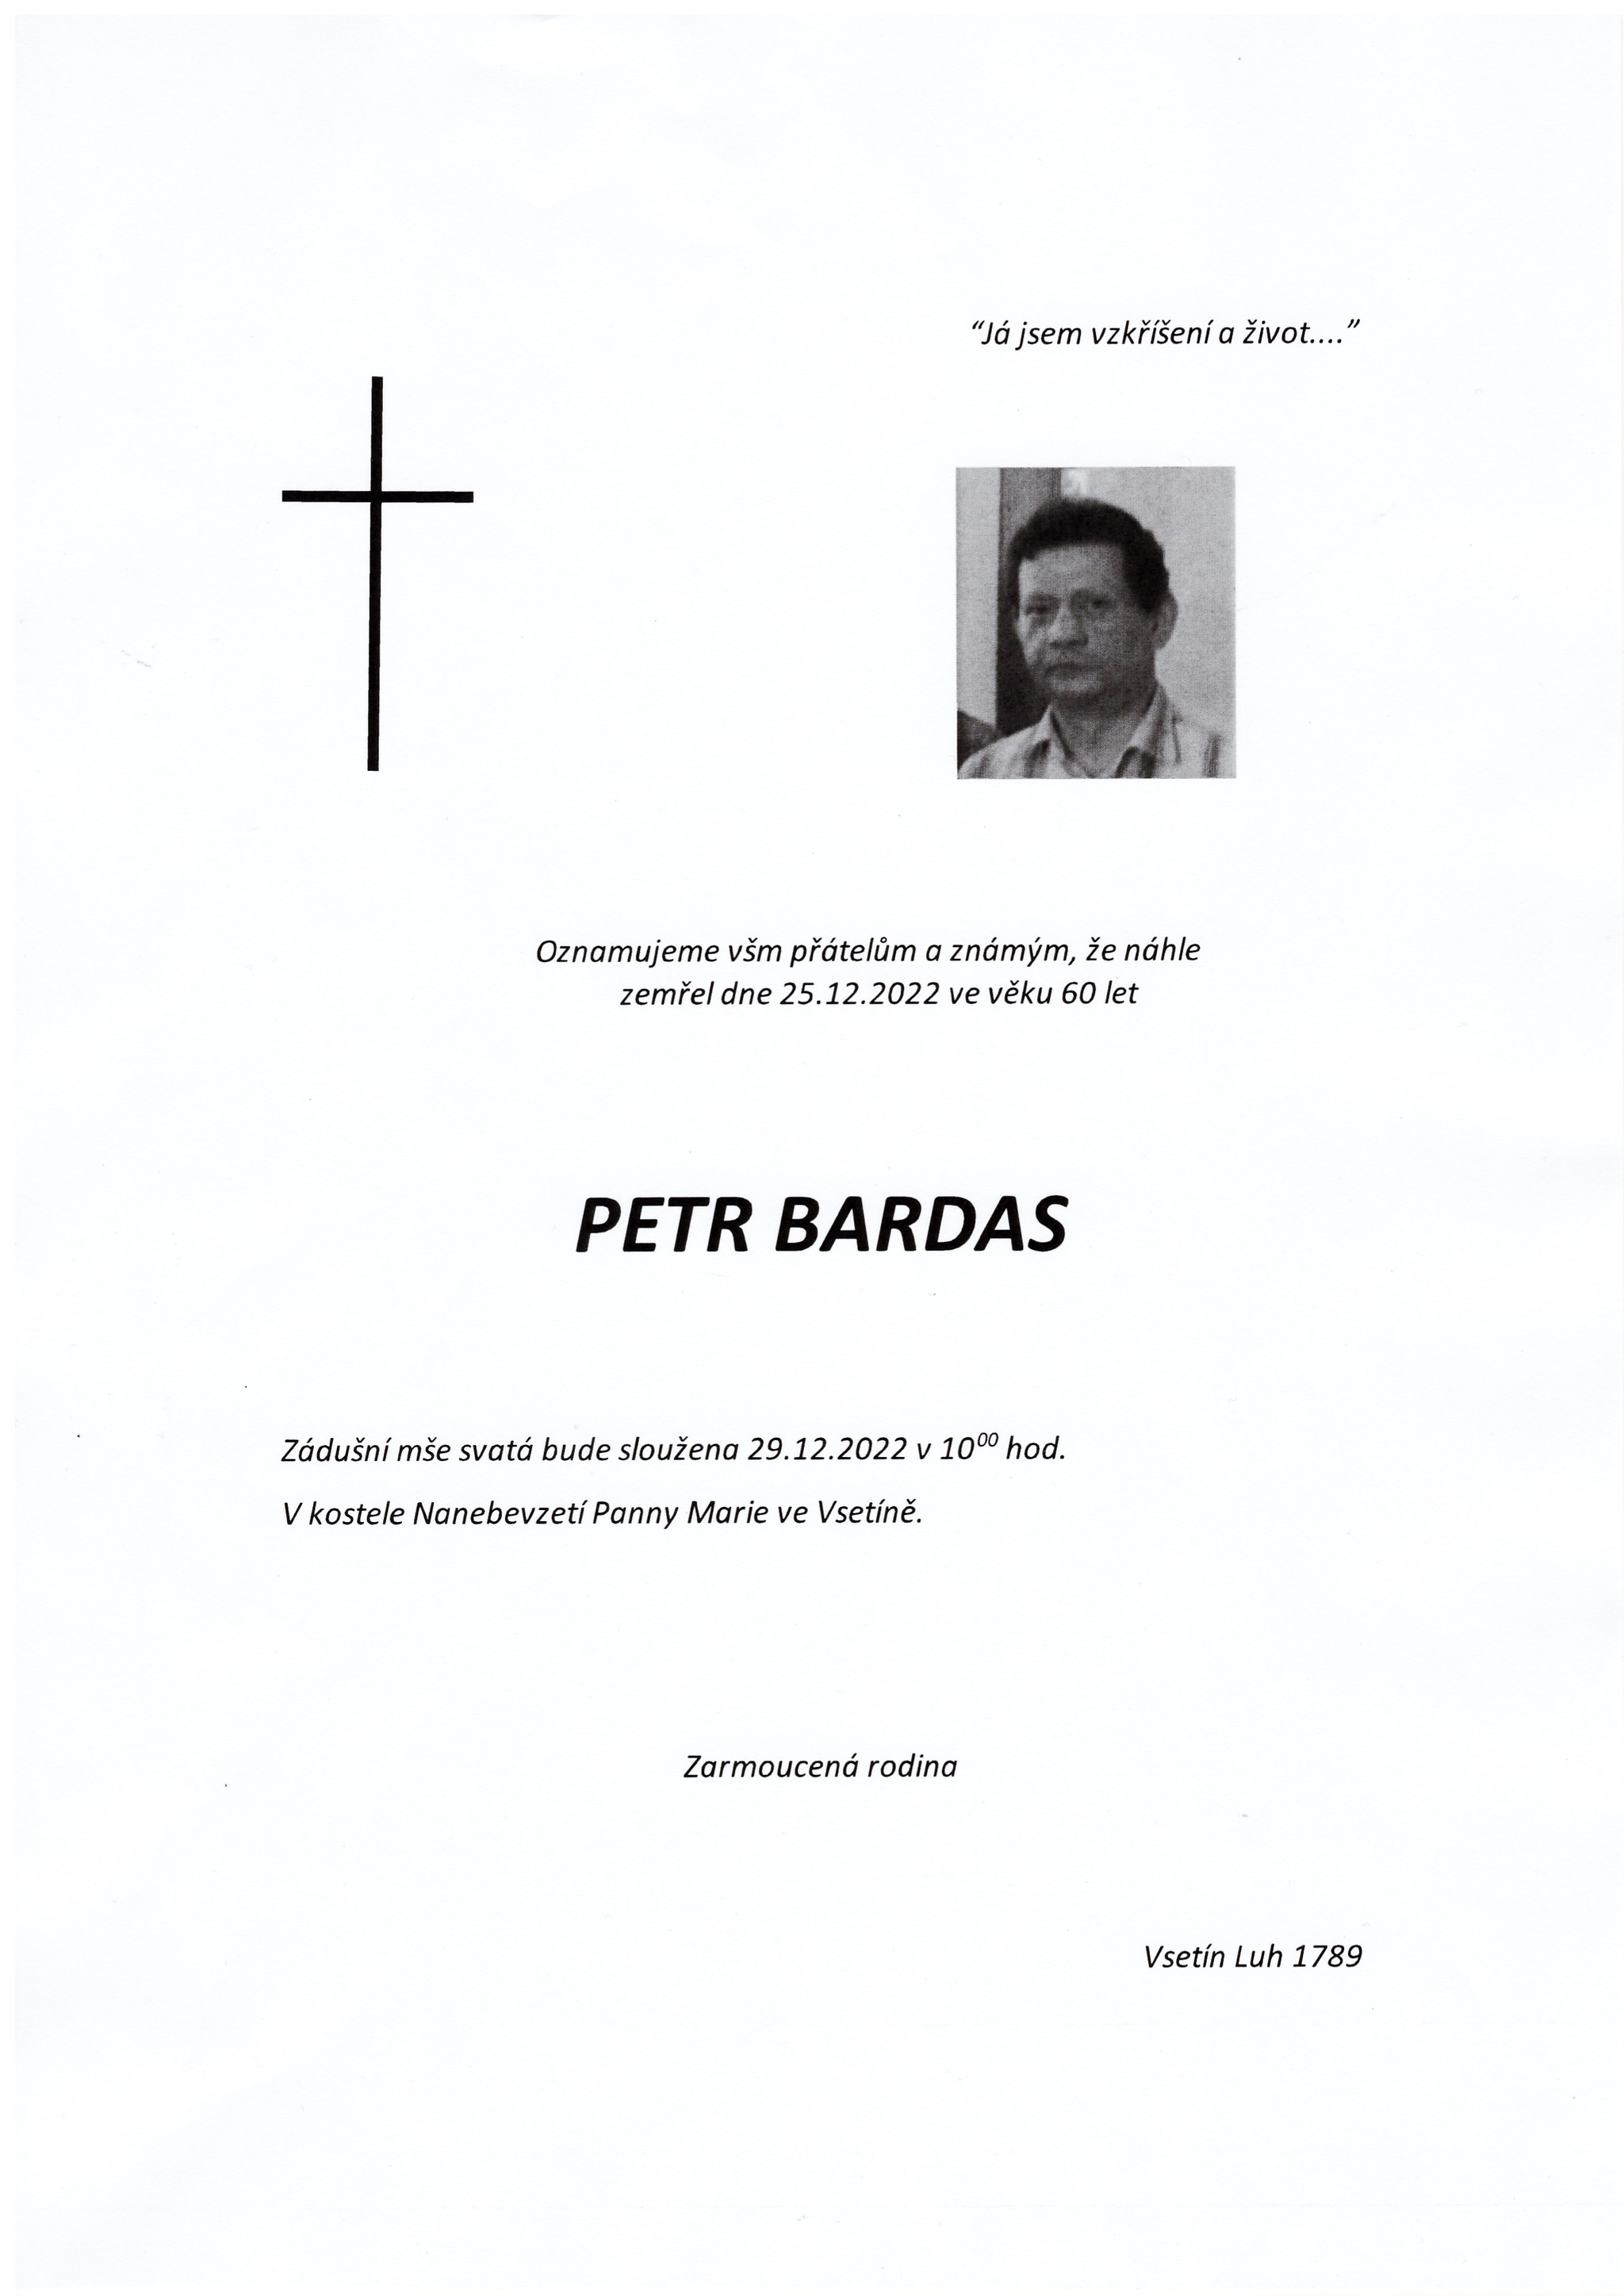 Petr Bardas